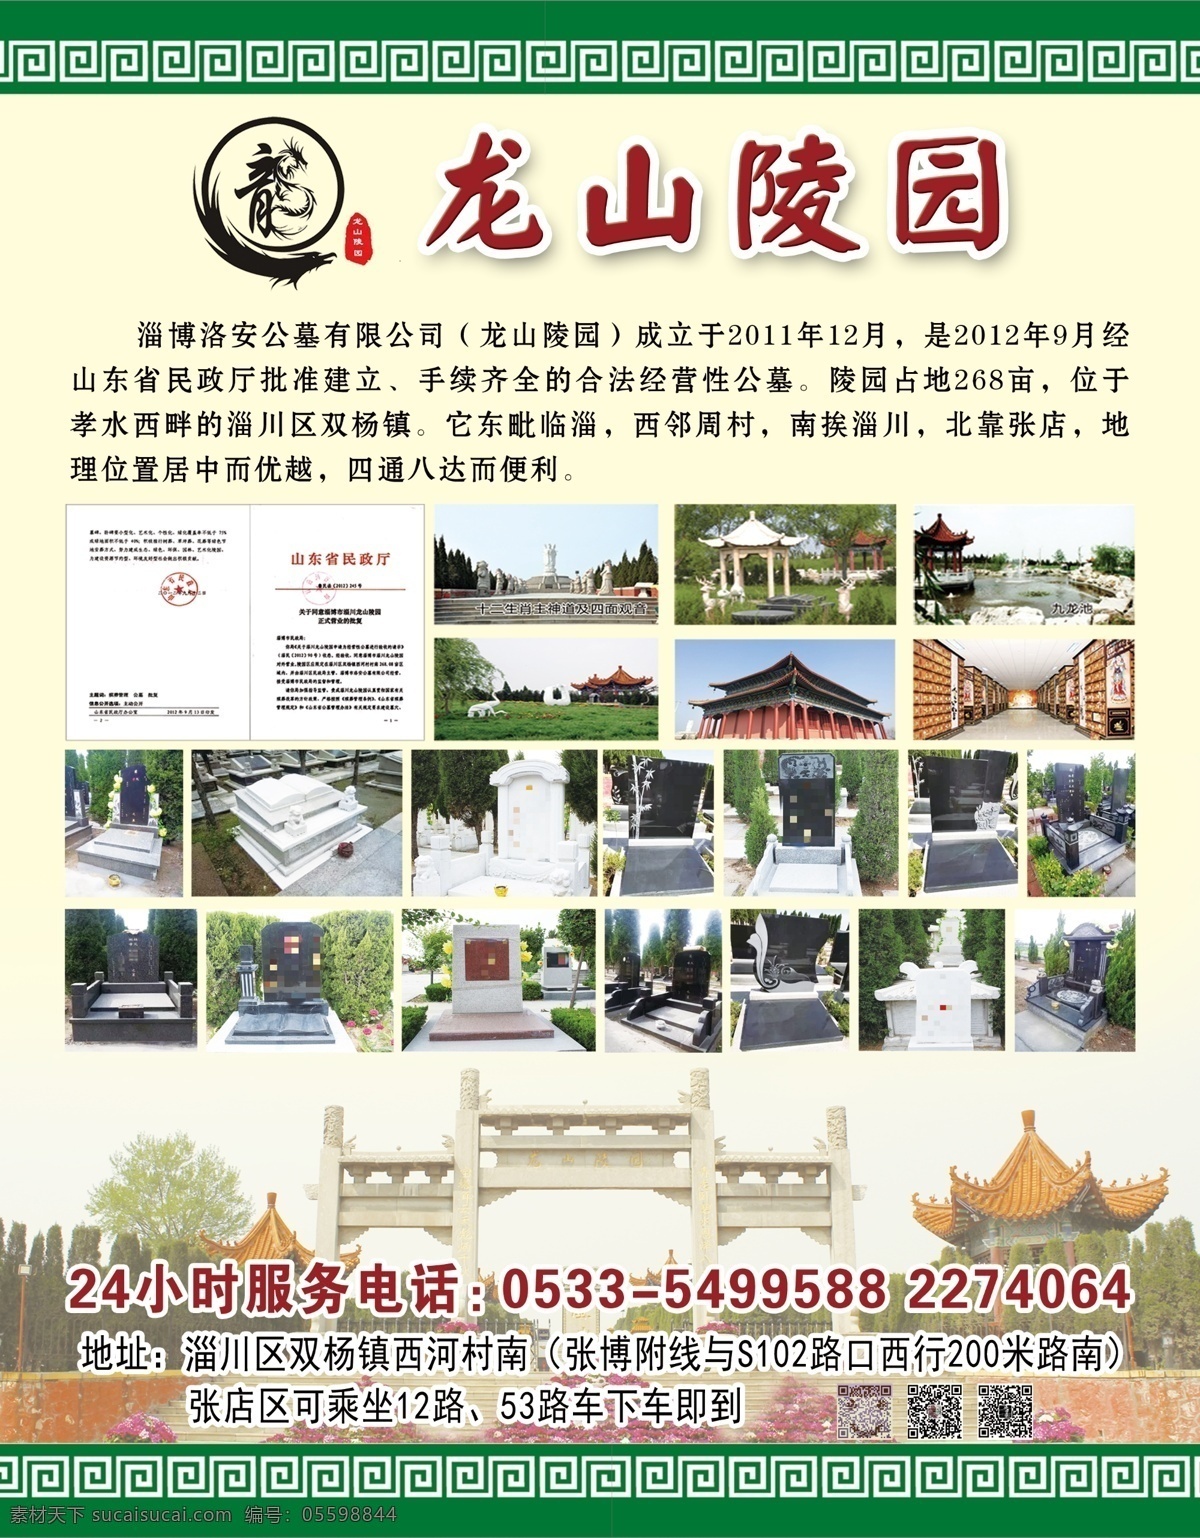 陵园图片 墓地 陵园 中国风 绿色 祭奠